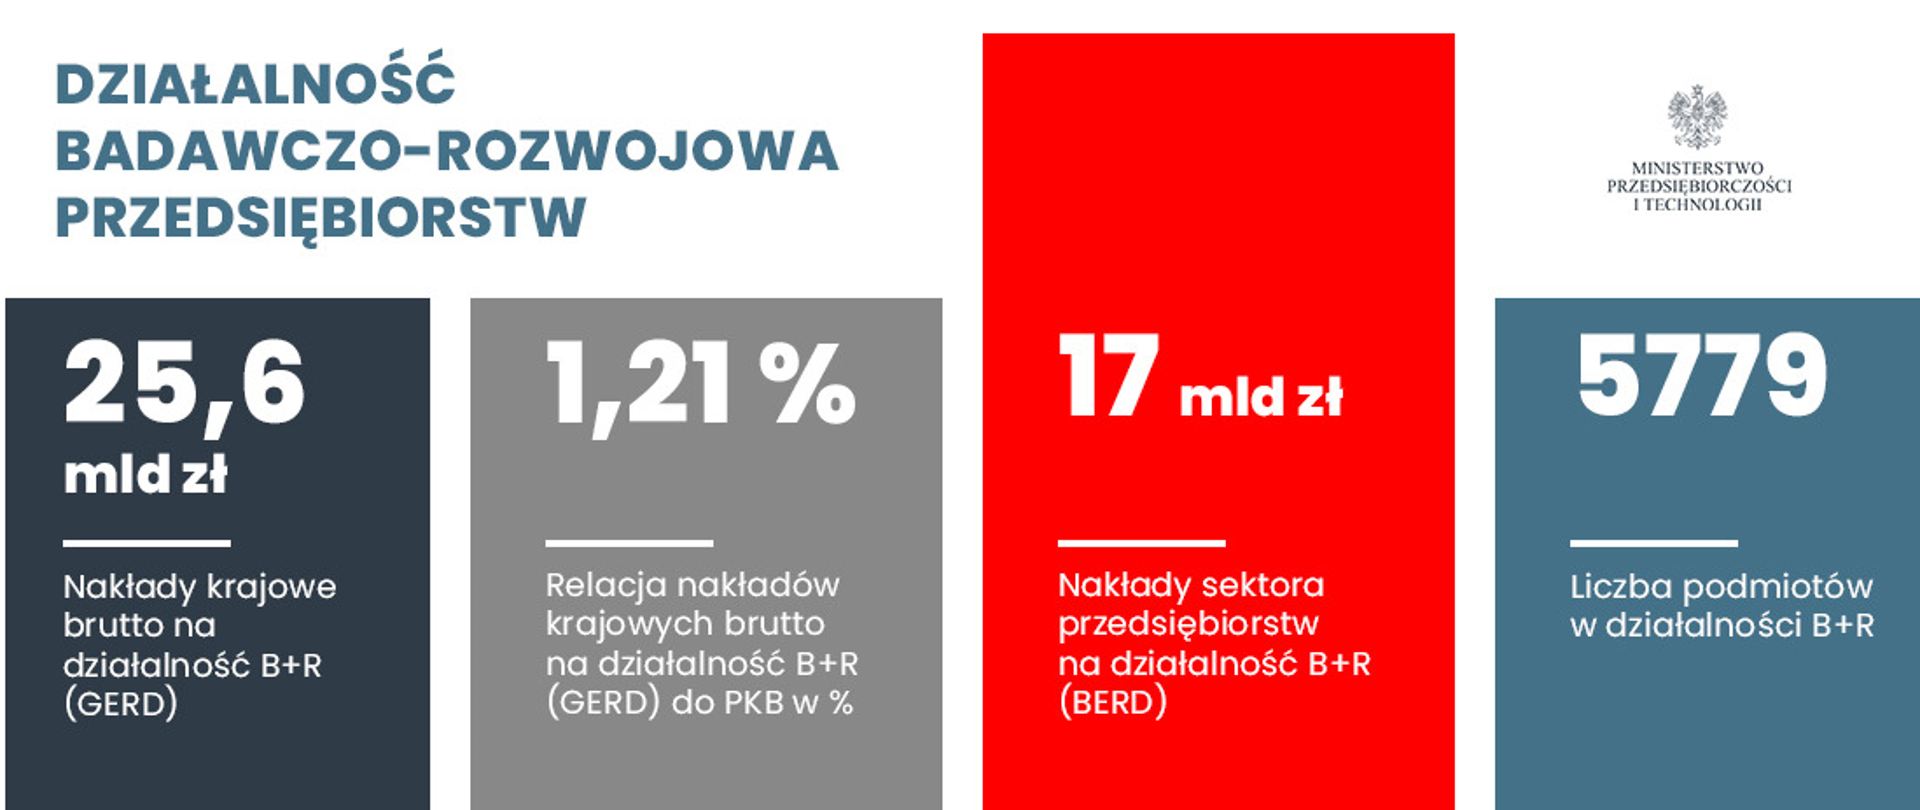 Działalność badawczo-rozwojowa polskich firm